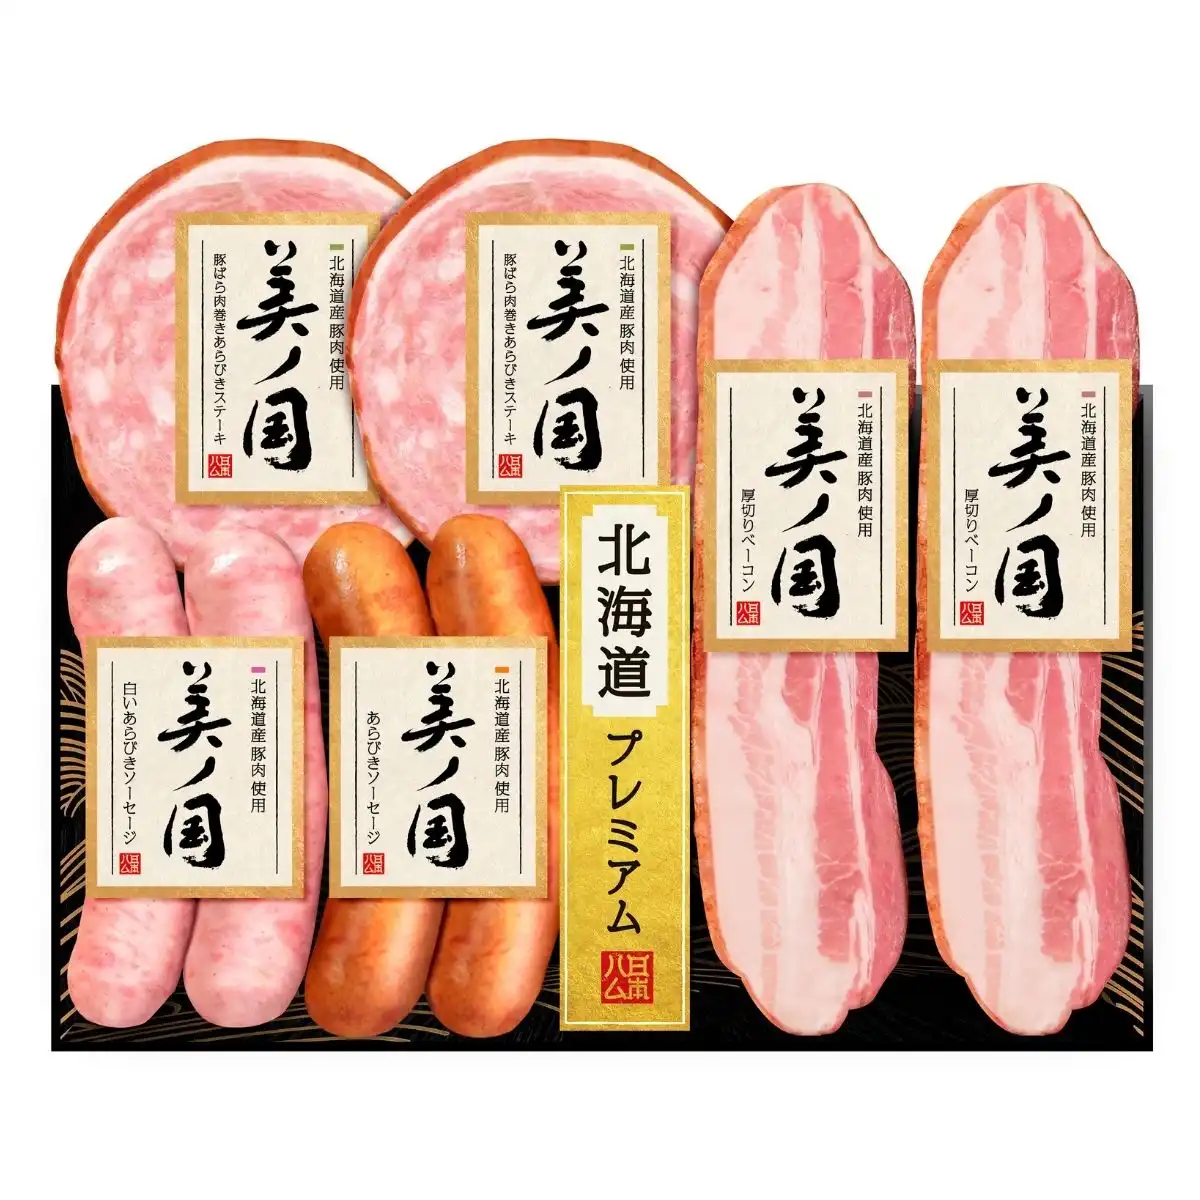 日本ハム 北海道産豚肉使用美ノ国 UKH-35